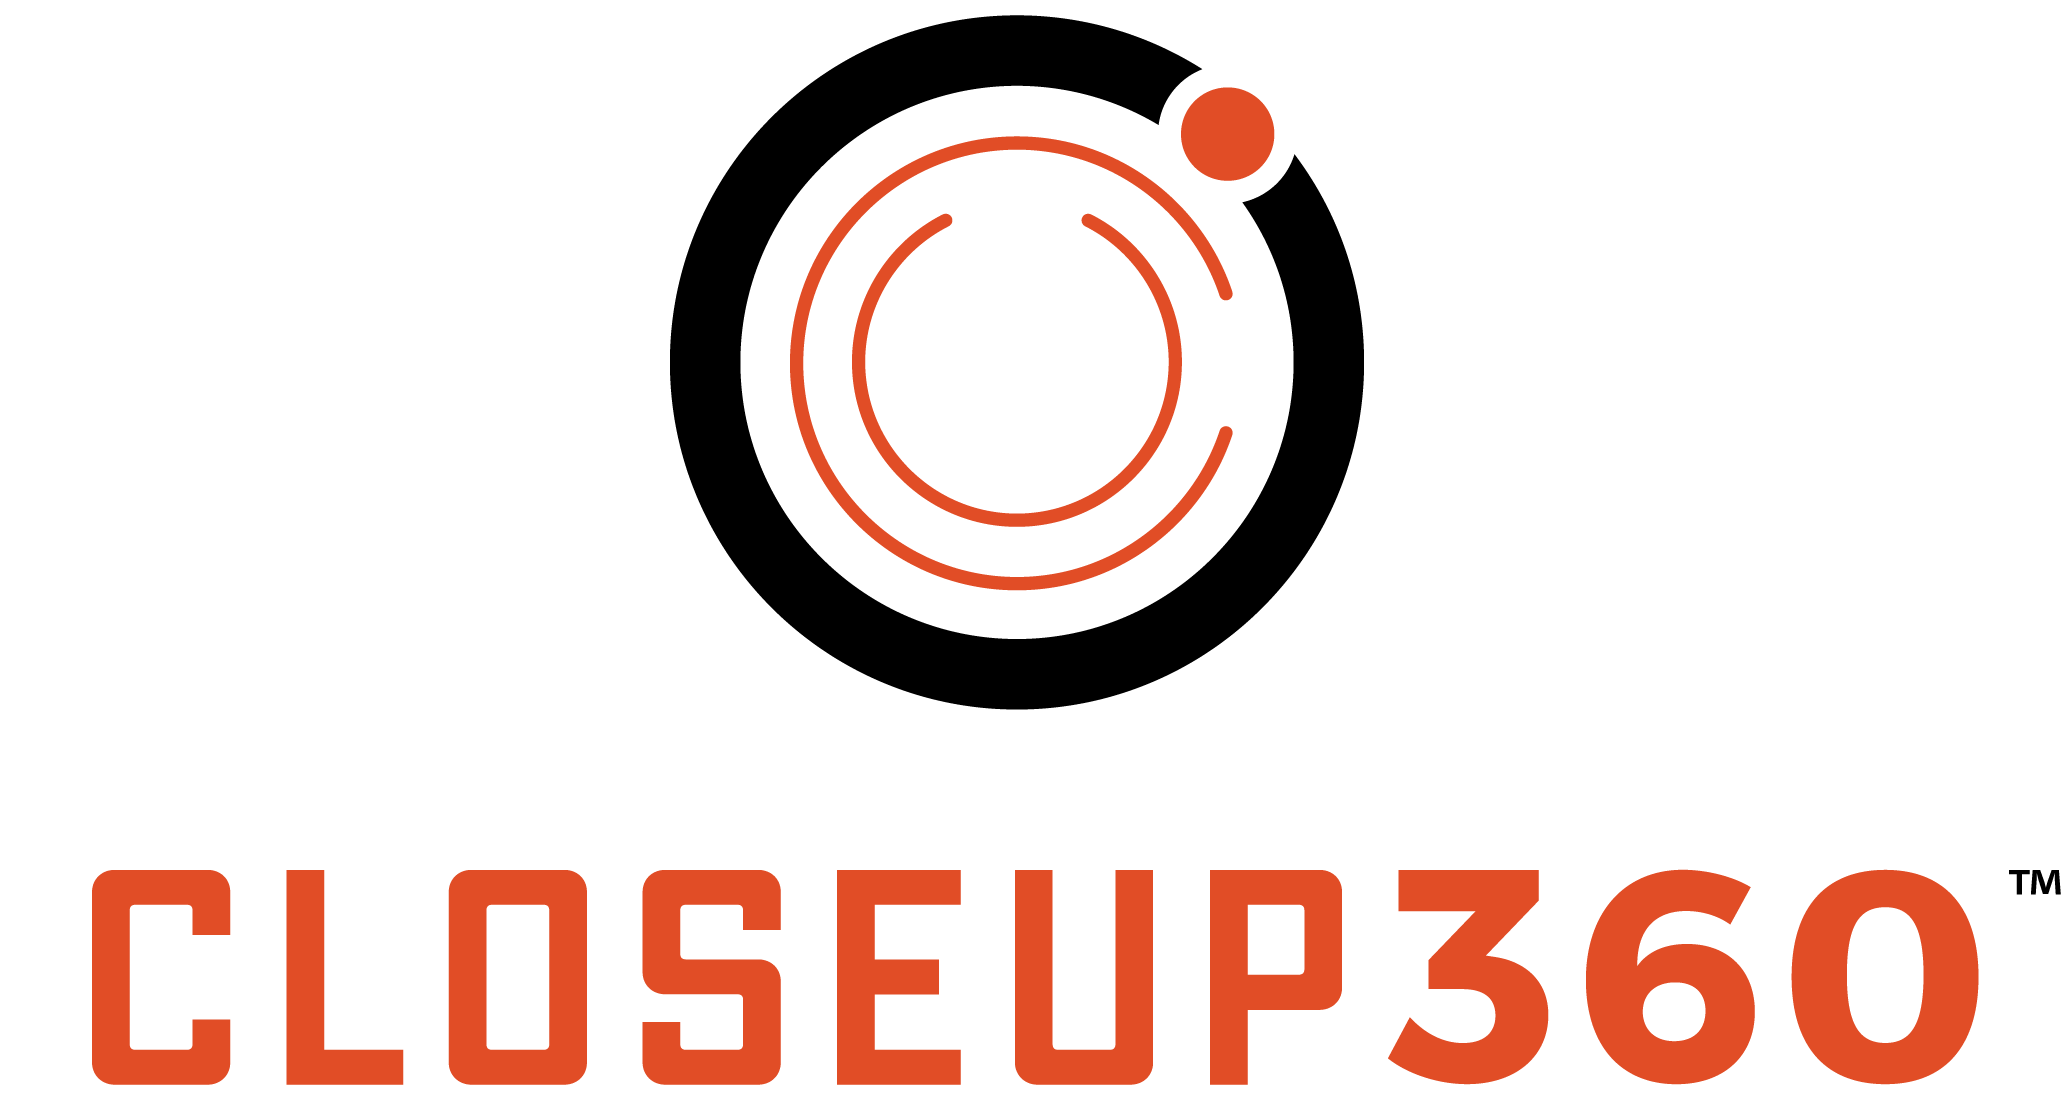 Closeup 360 logo